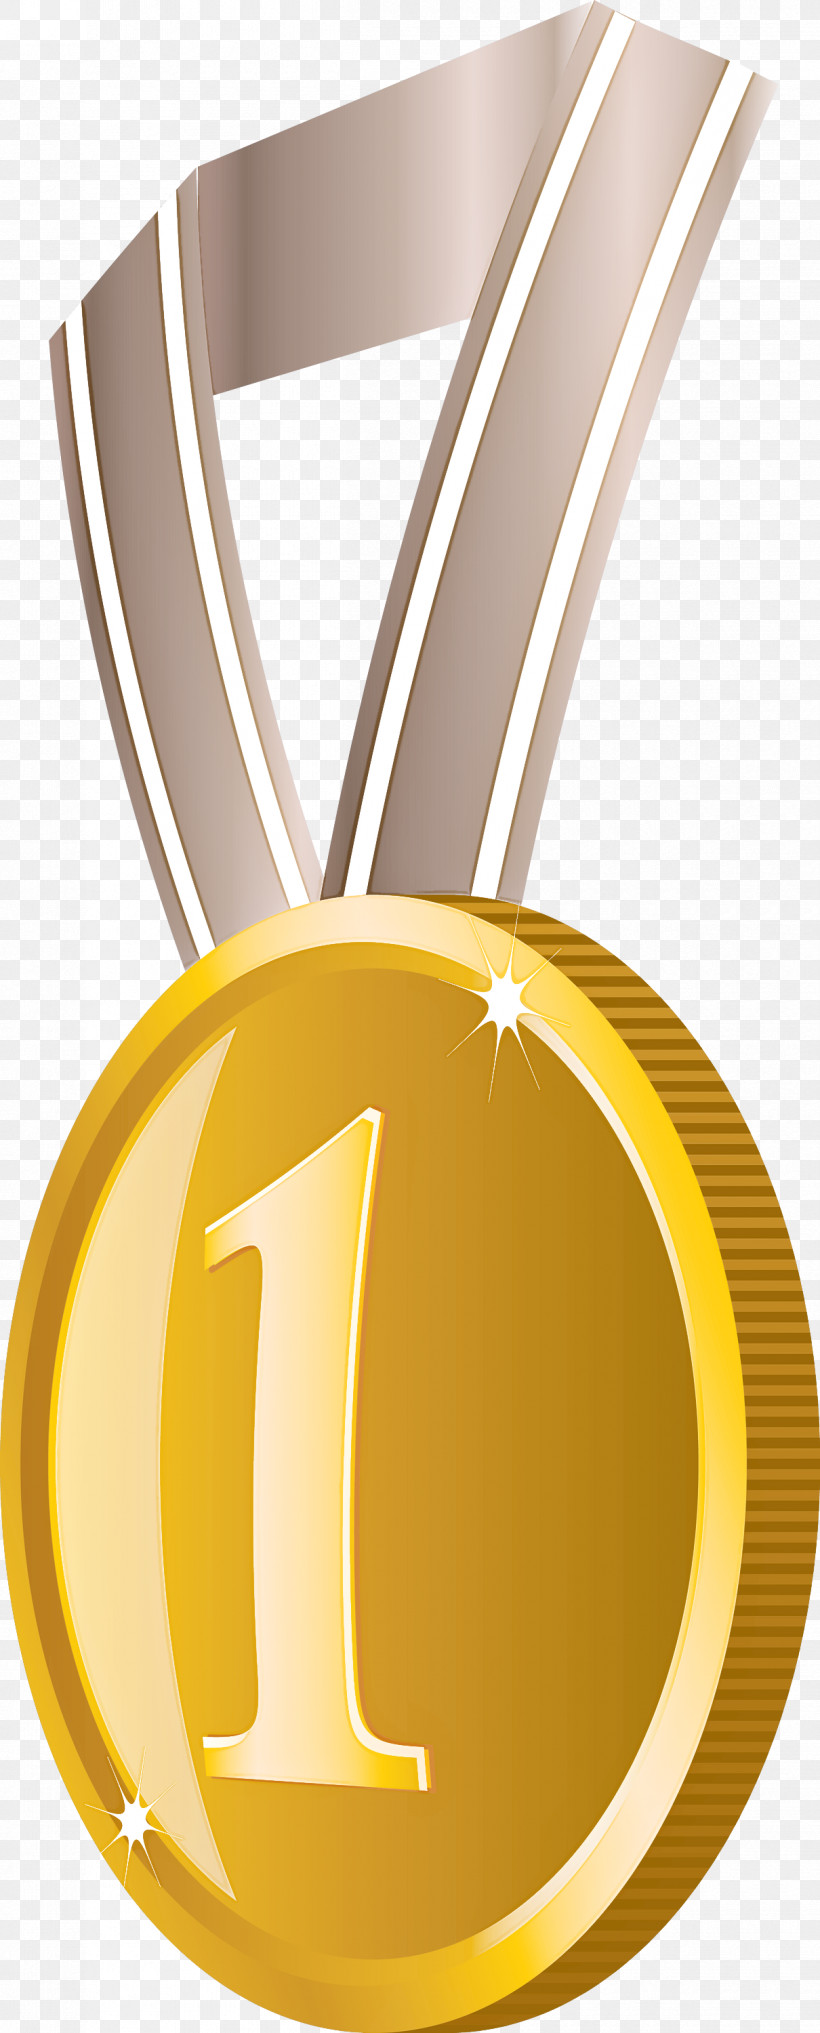 Gold Badge No 1 Badge Award Gold Badge, PNG, 1210x3000px, Gold Badge, Award Gold Badge, Badge, Colored Gold, Gold Download Free